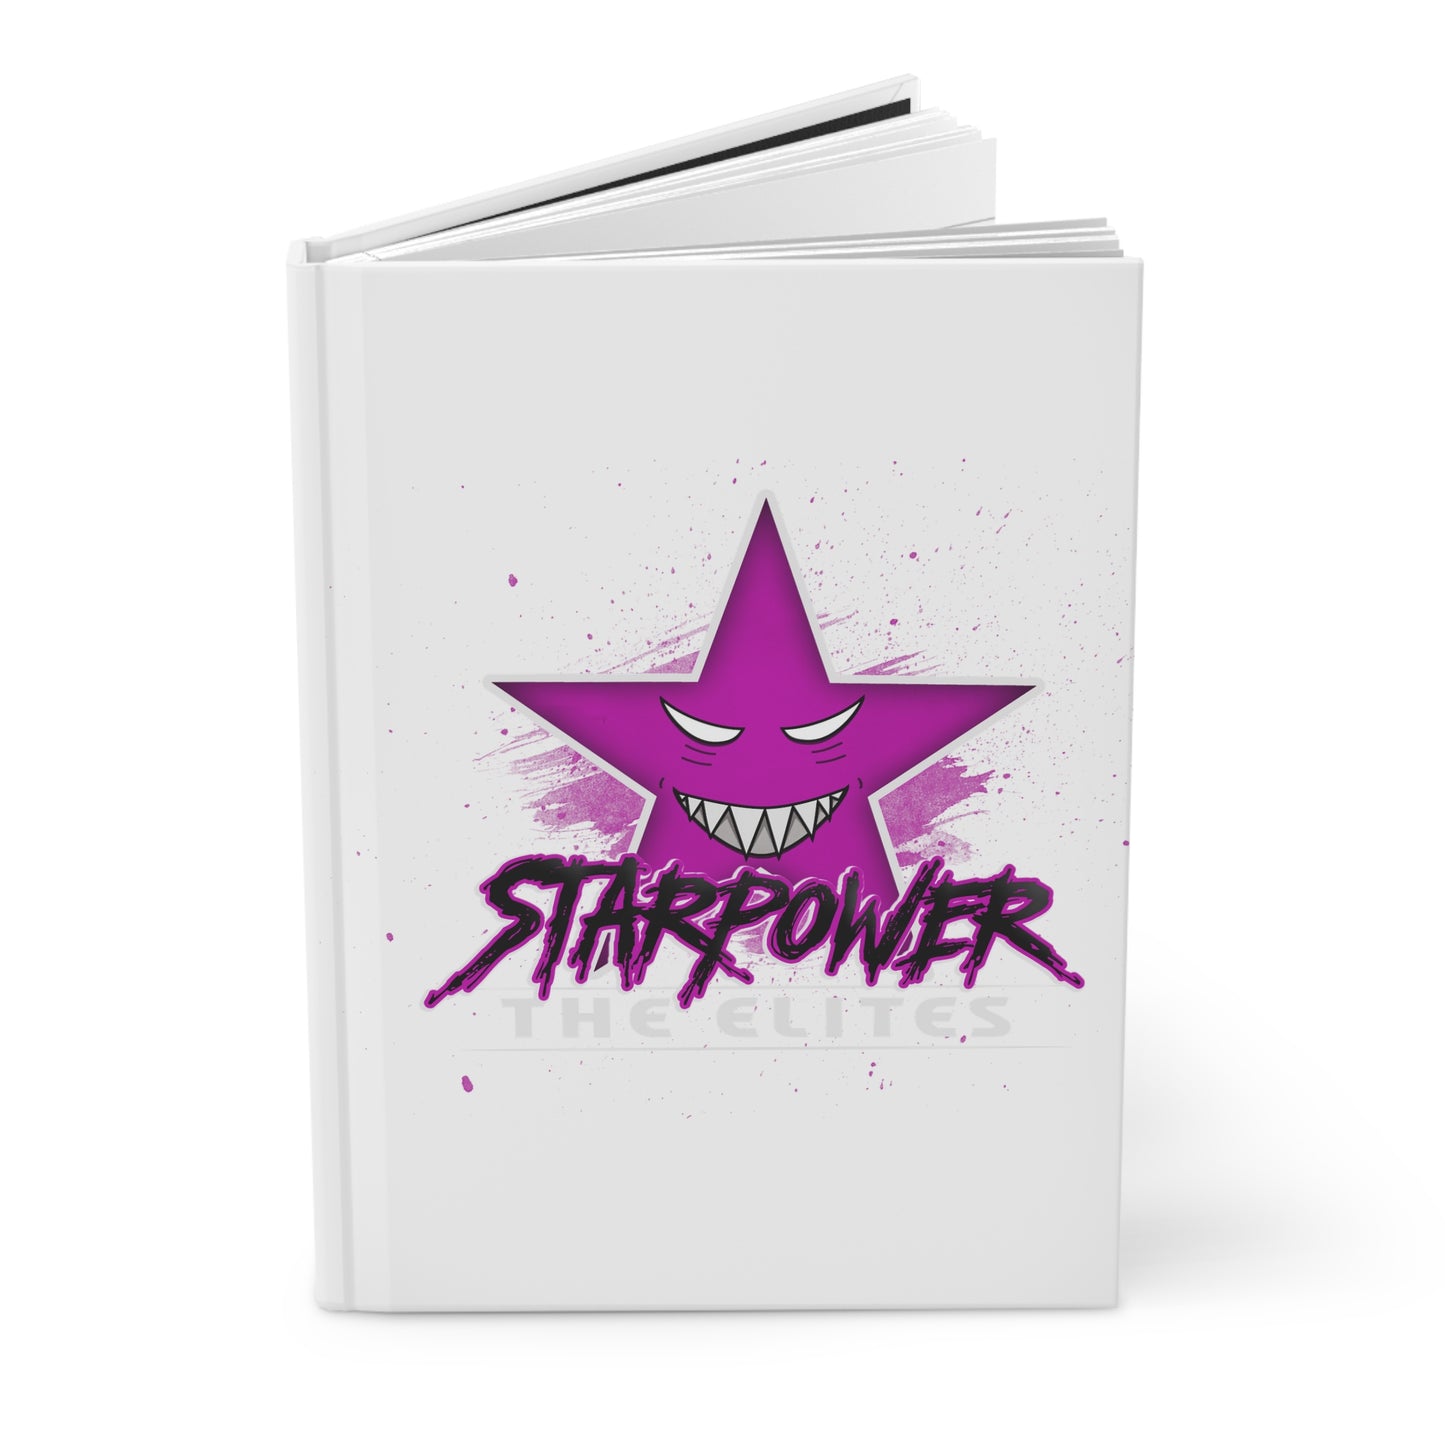 Starpower The Elites - Hardcover Journal Matte